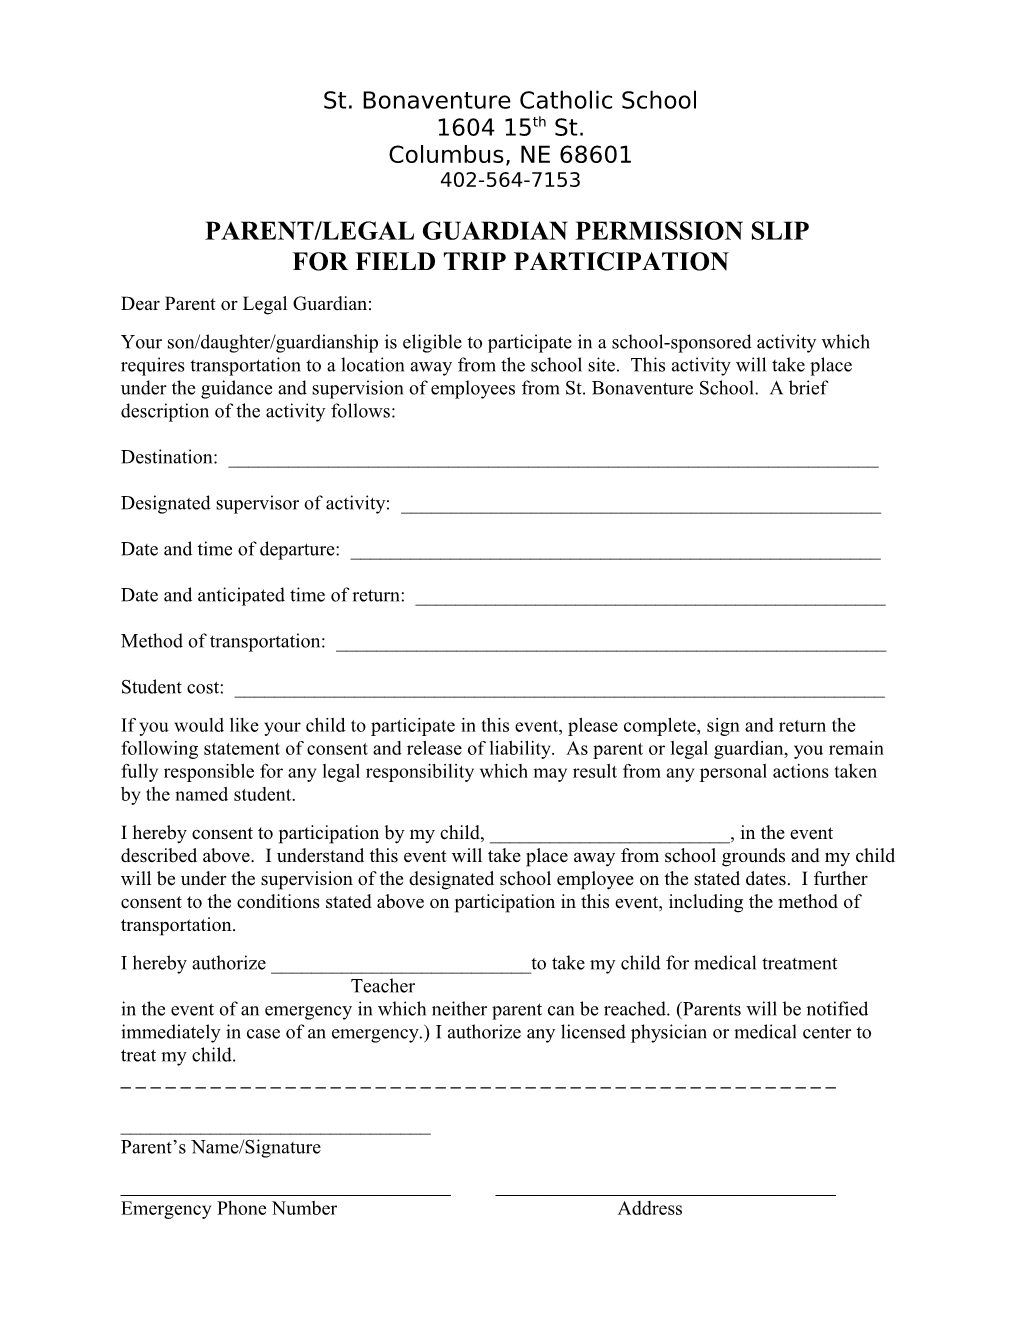 Parent/Legal Guardian Permission Slip